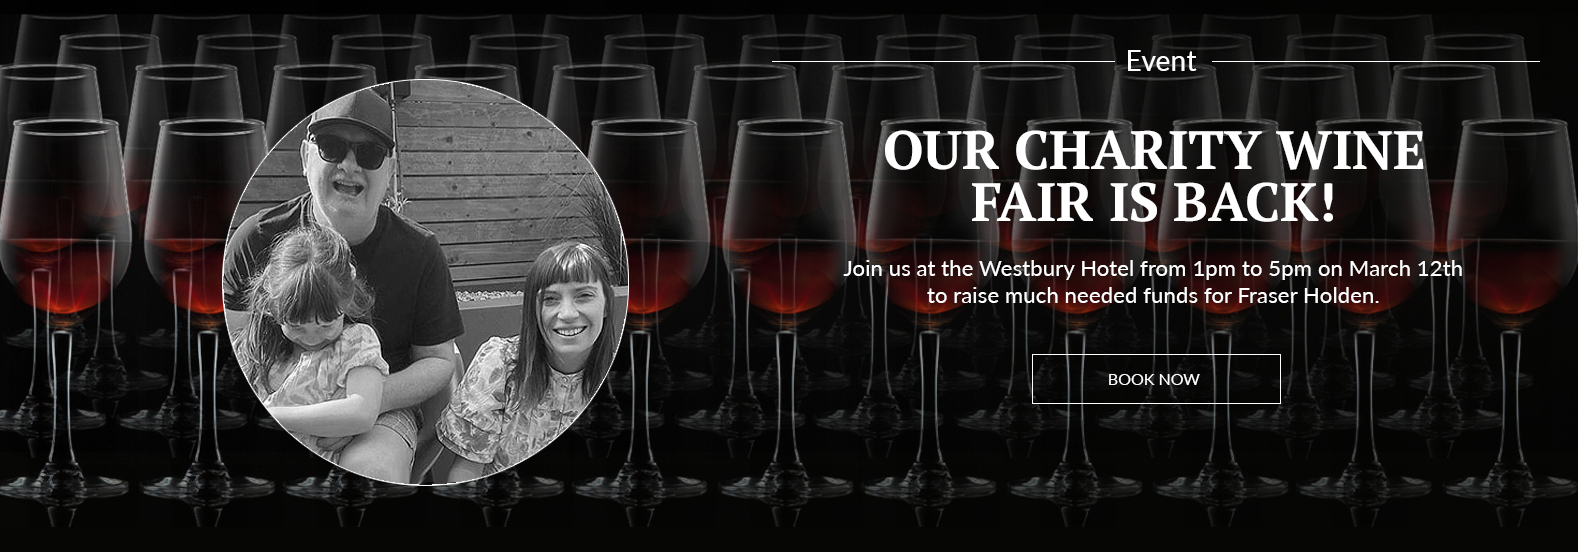 Annual Charity Wine Fair For Fraser Holden